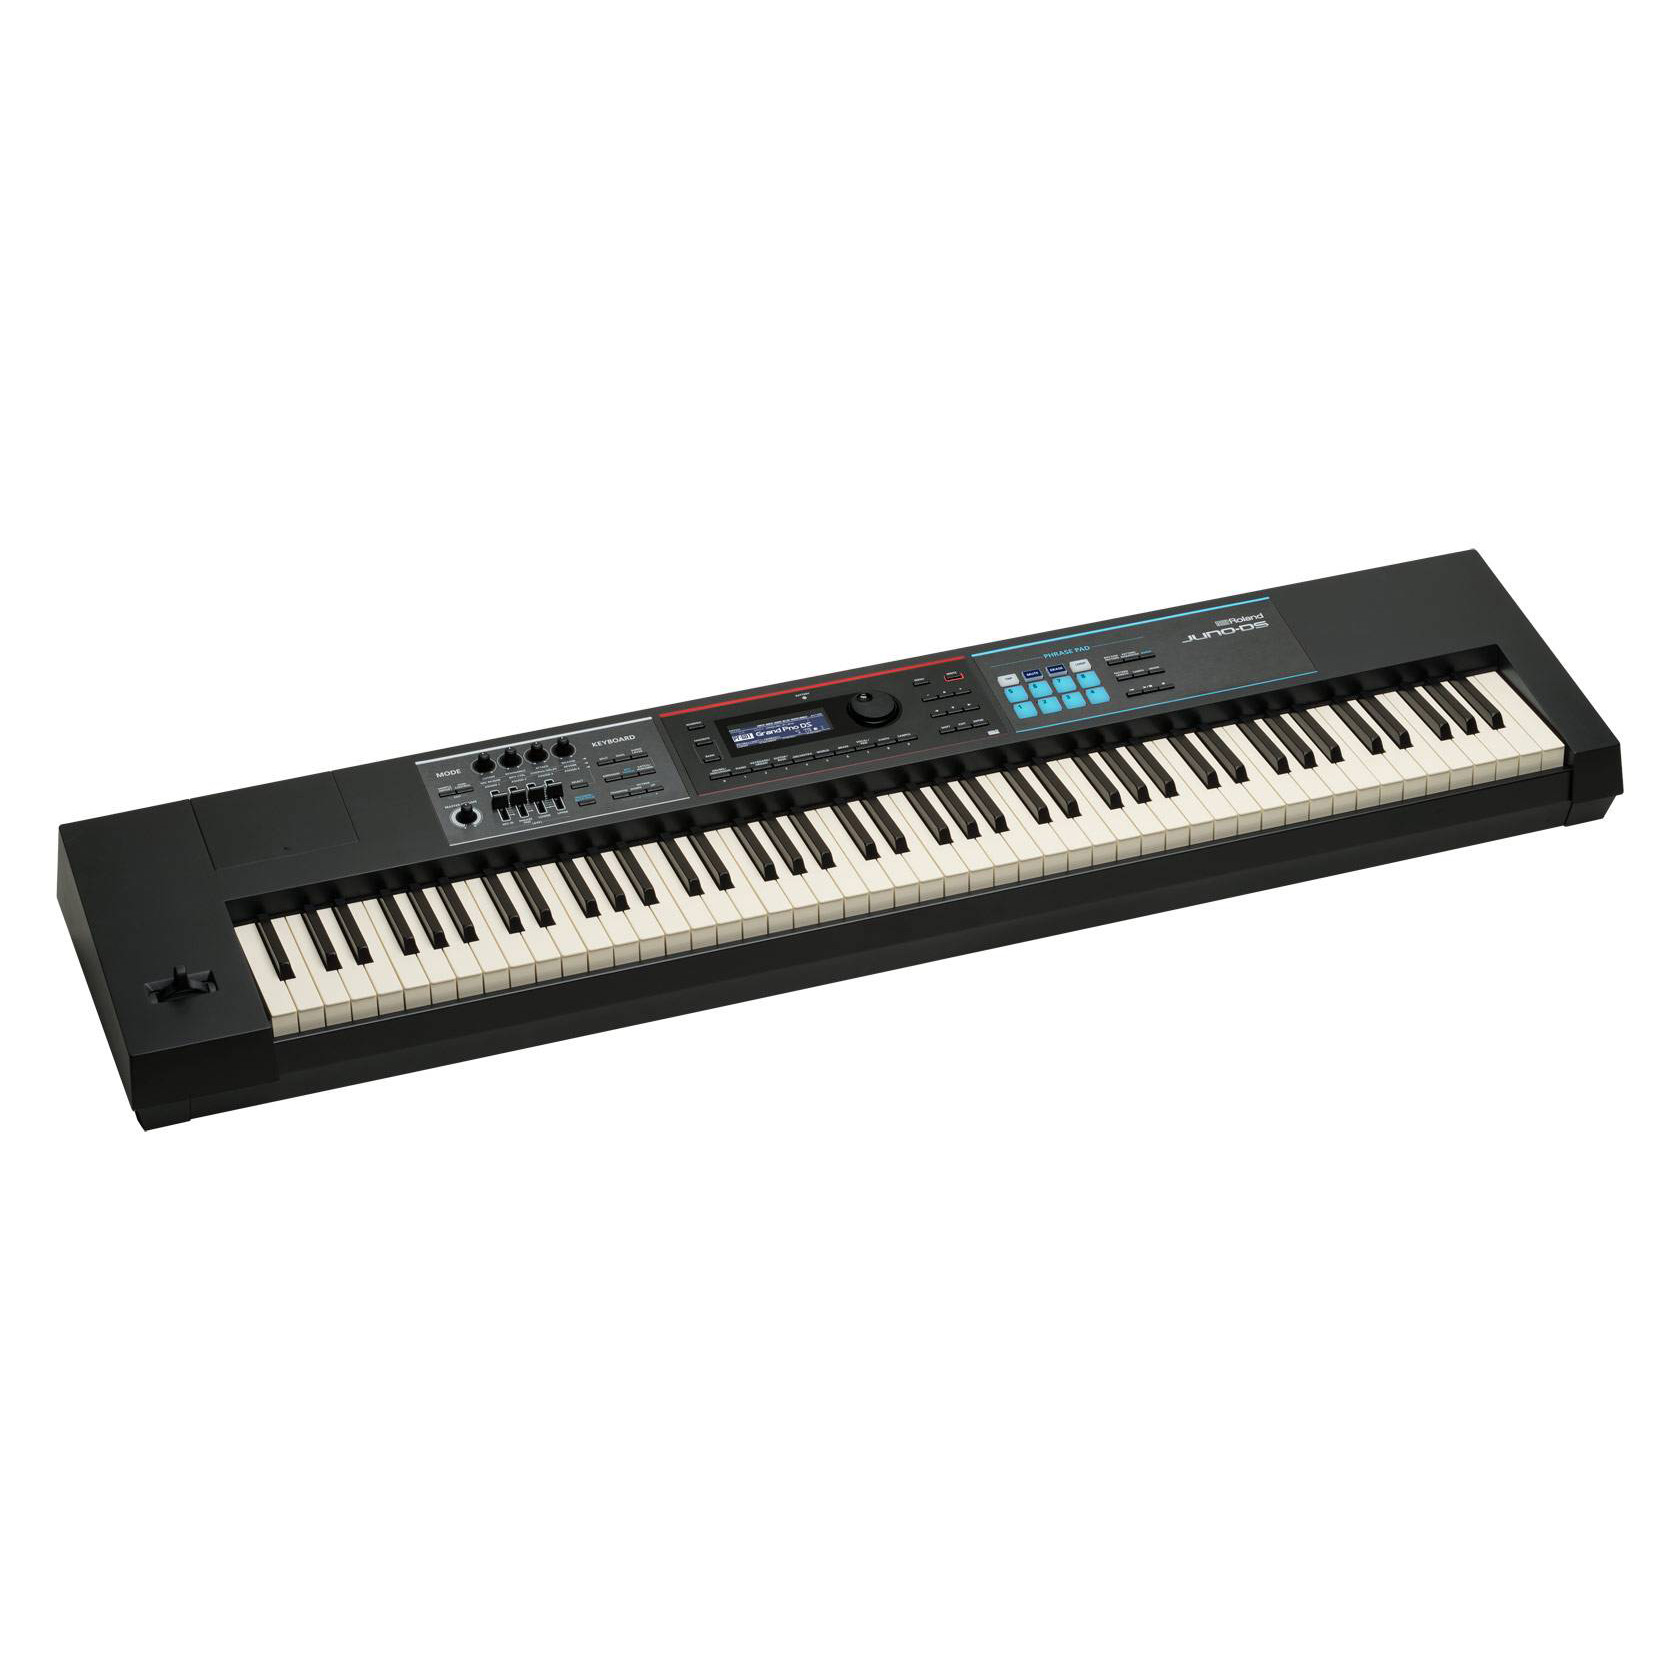 Roland JUNO-DS88 Клавишные цифровые синтезаторы